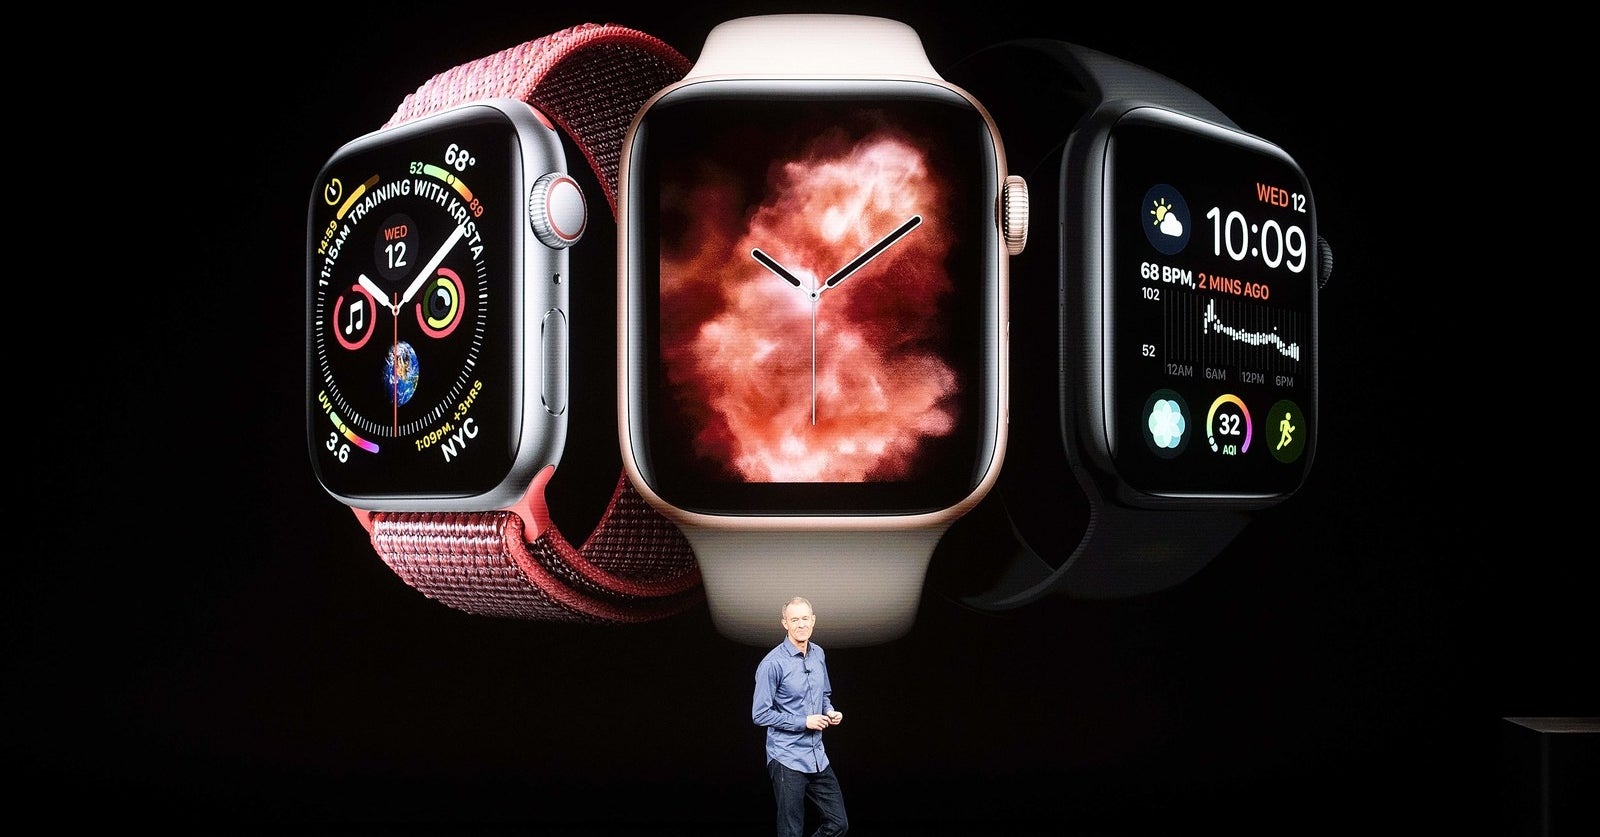 iPhoneより買いかも？Apple Watch新モデルの魅力を1分で解説